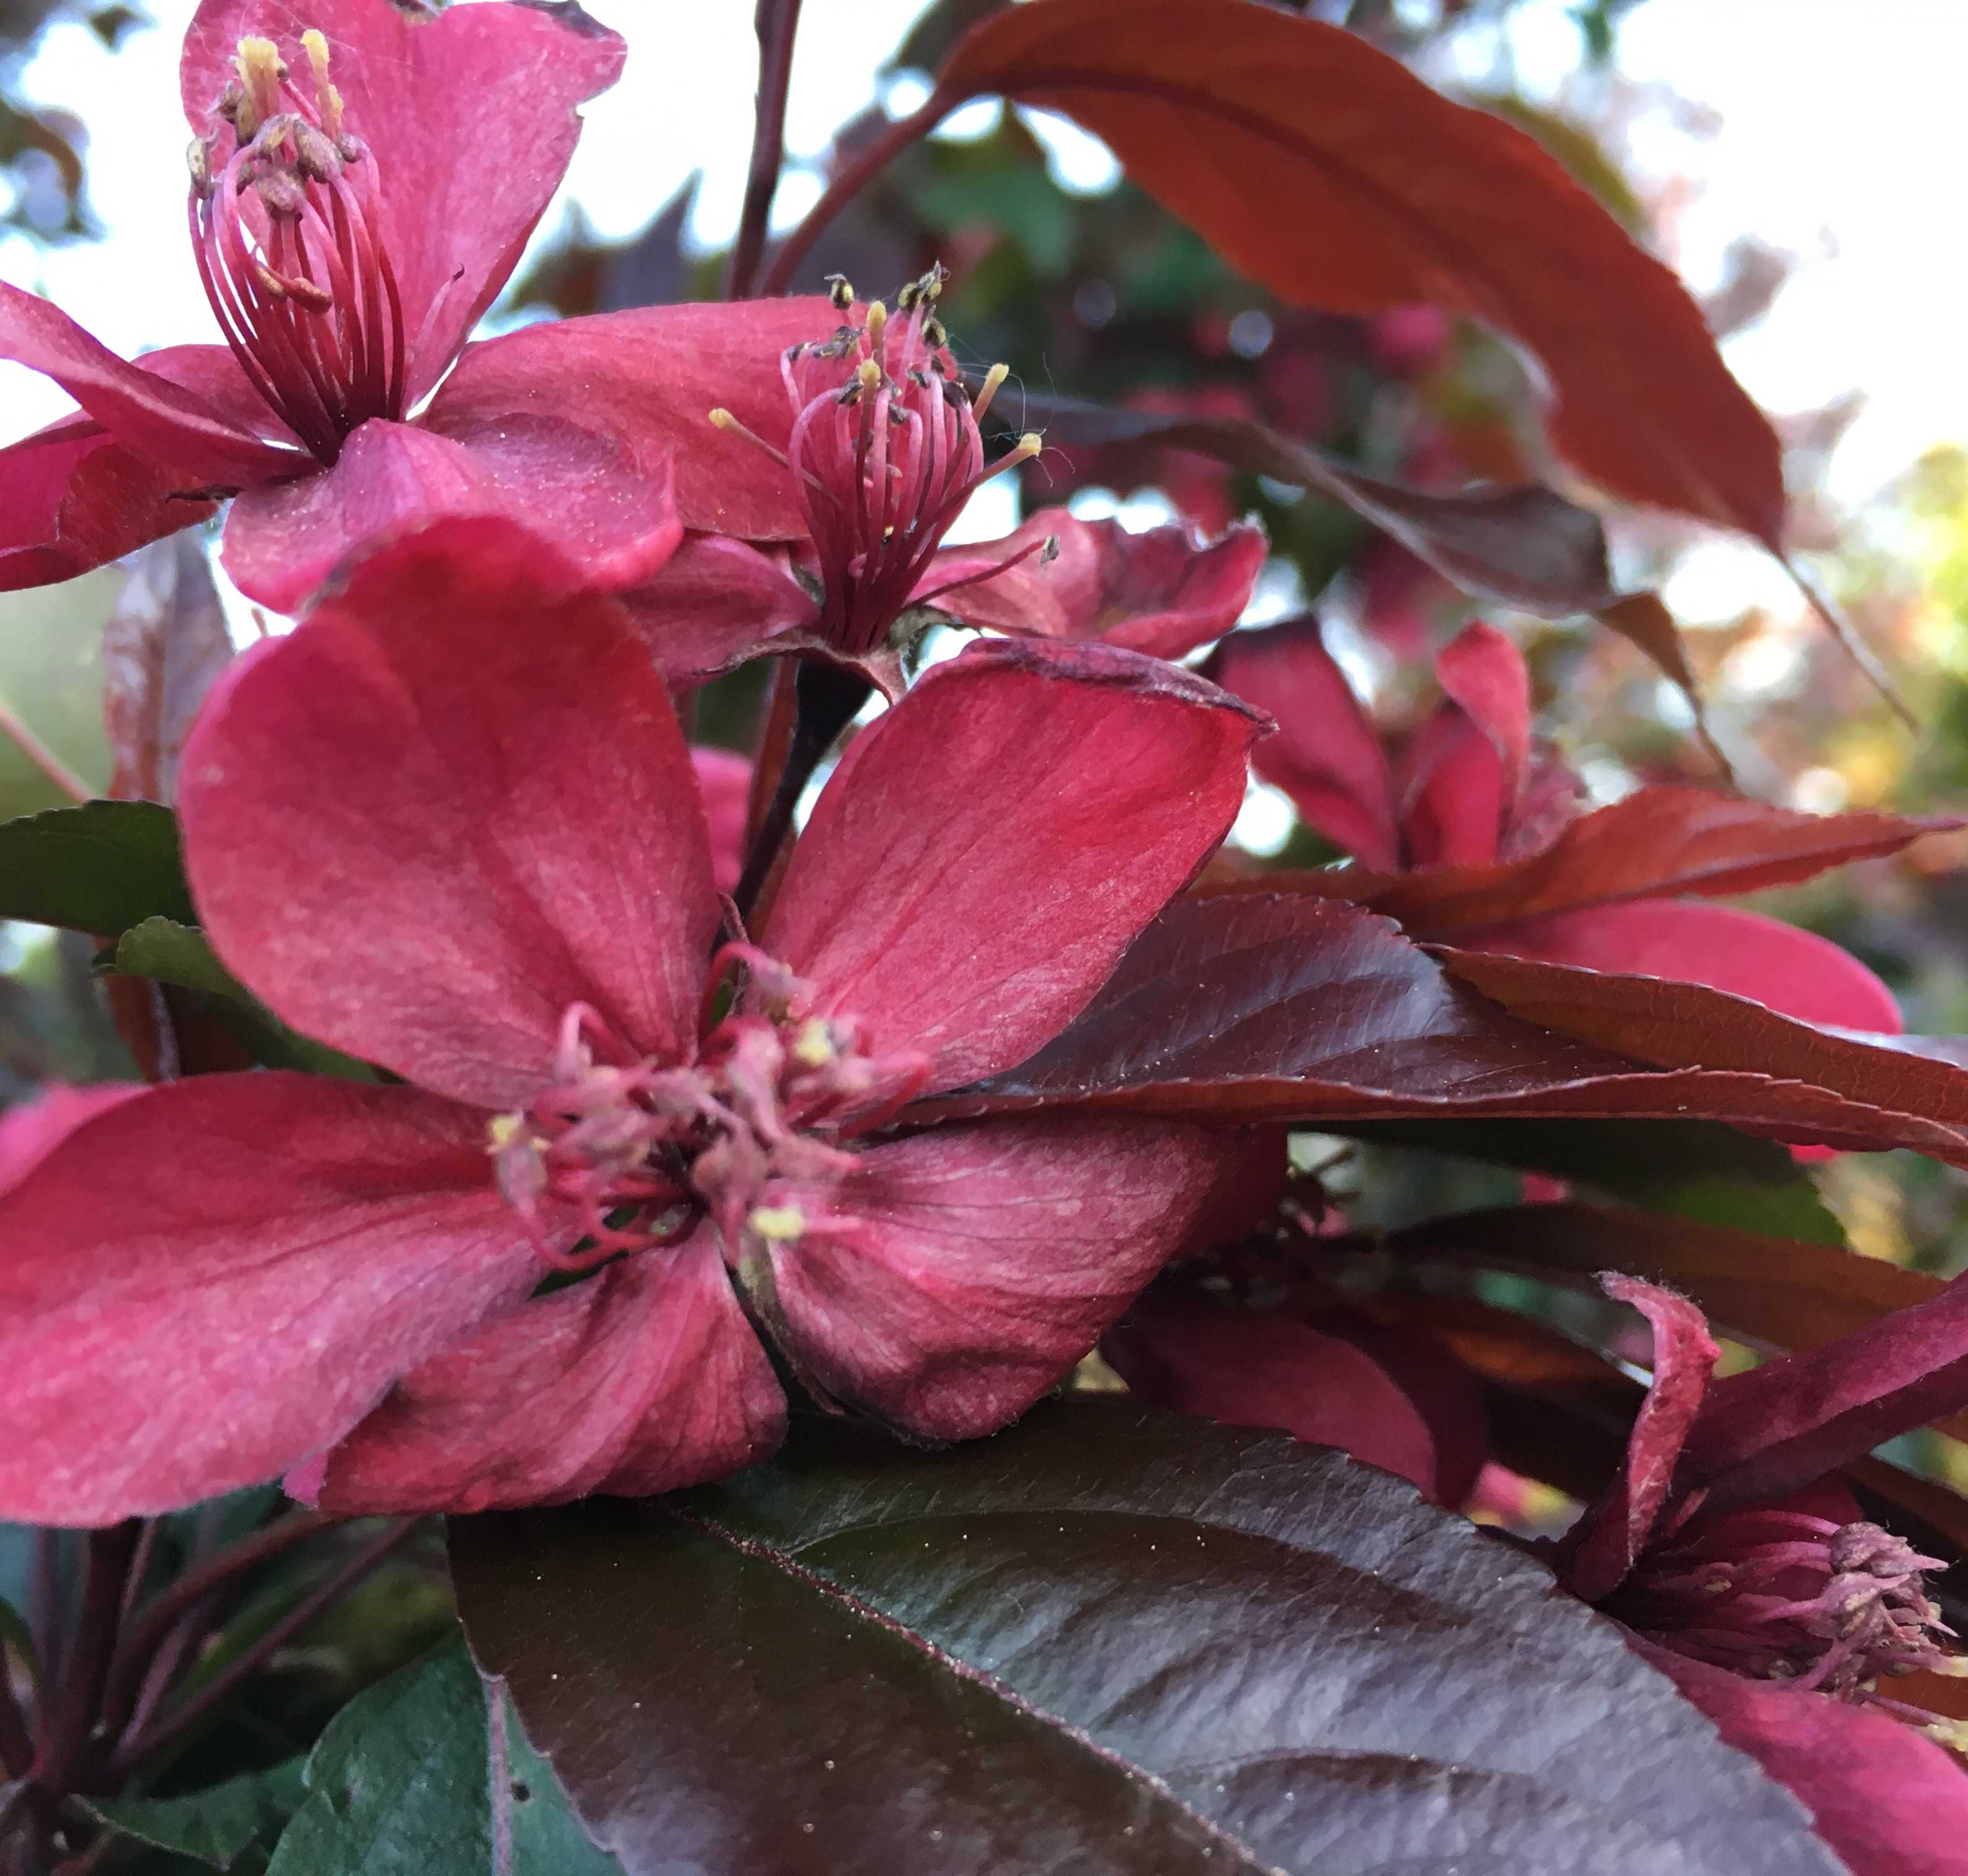 Сорта декоративных яблонь: виды с розовыми цветами, с красными листьями и цветами, со съедобными плодами, их фото и применение в ландшафтном дизайне, а также что такое японская яблоня